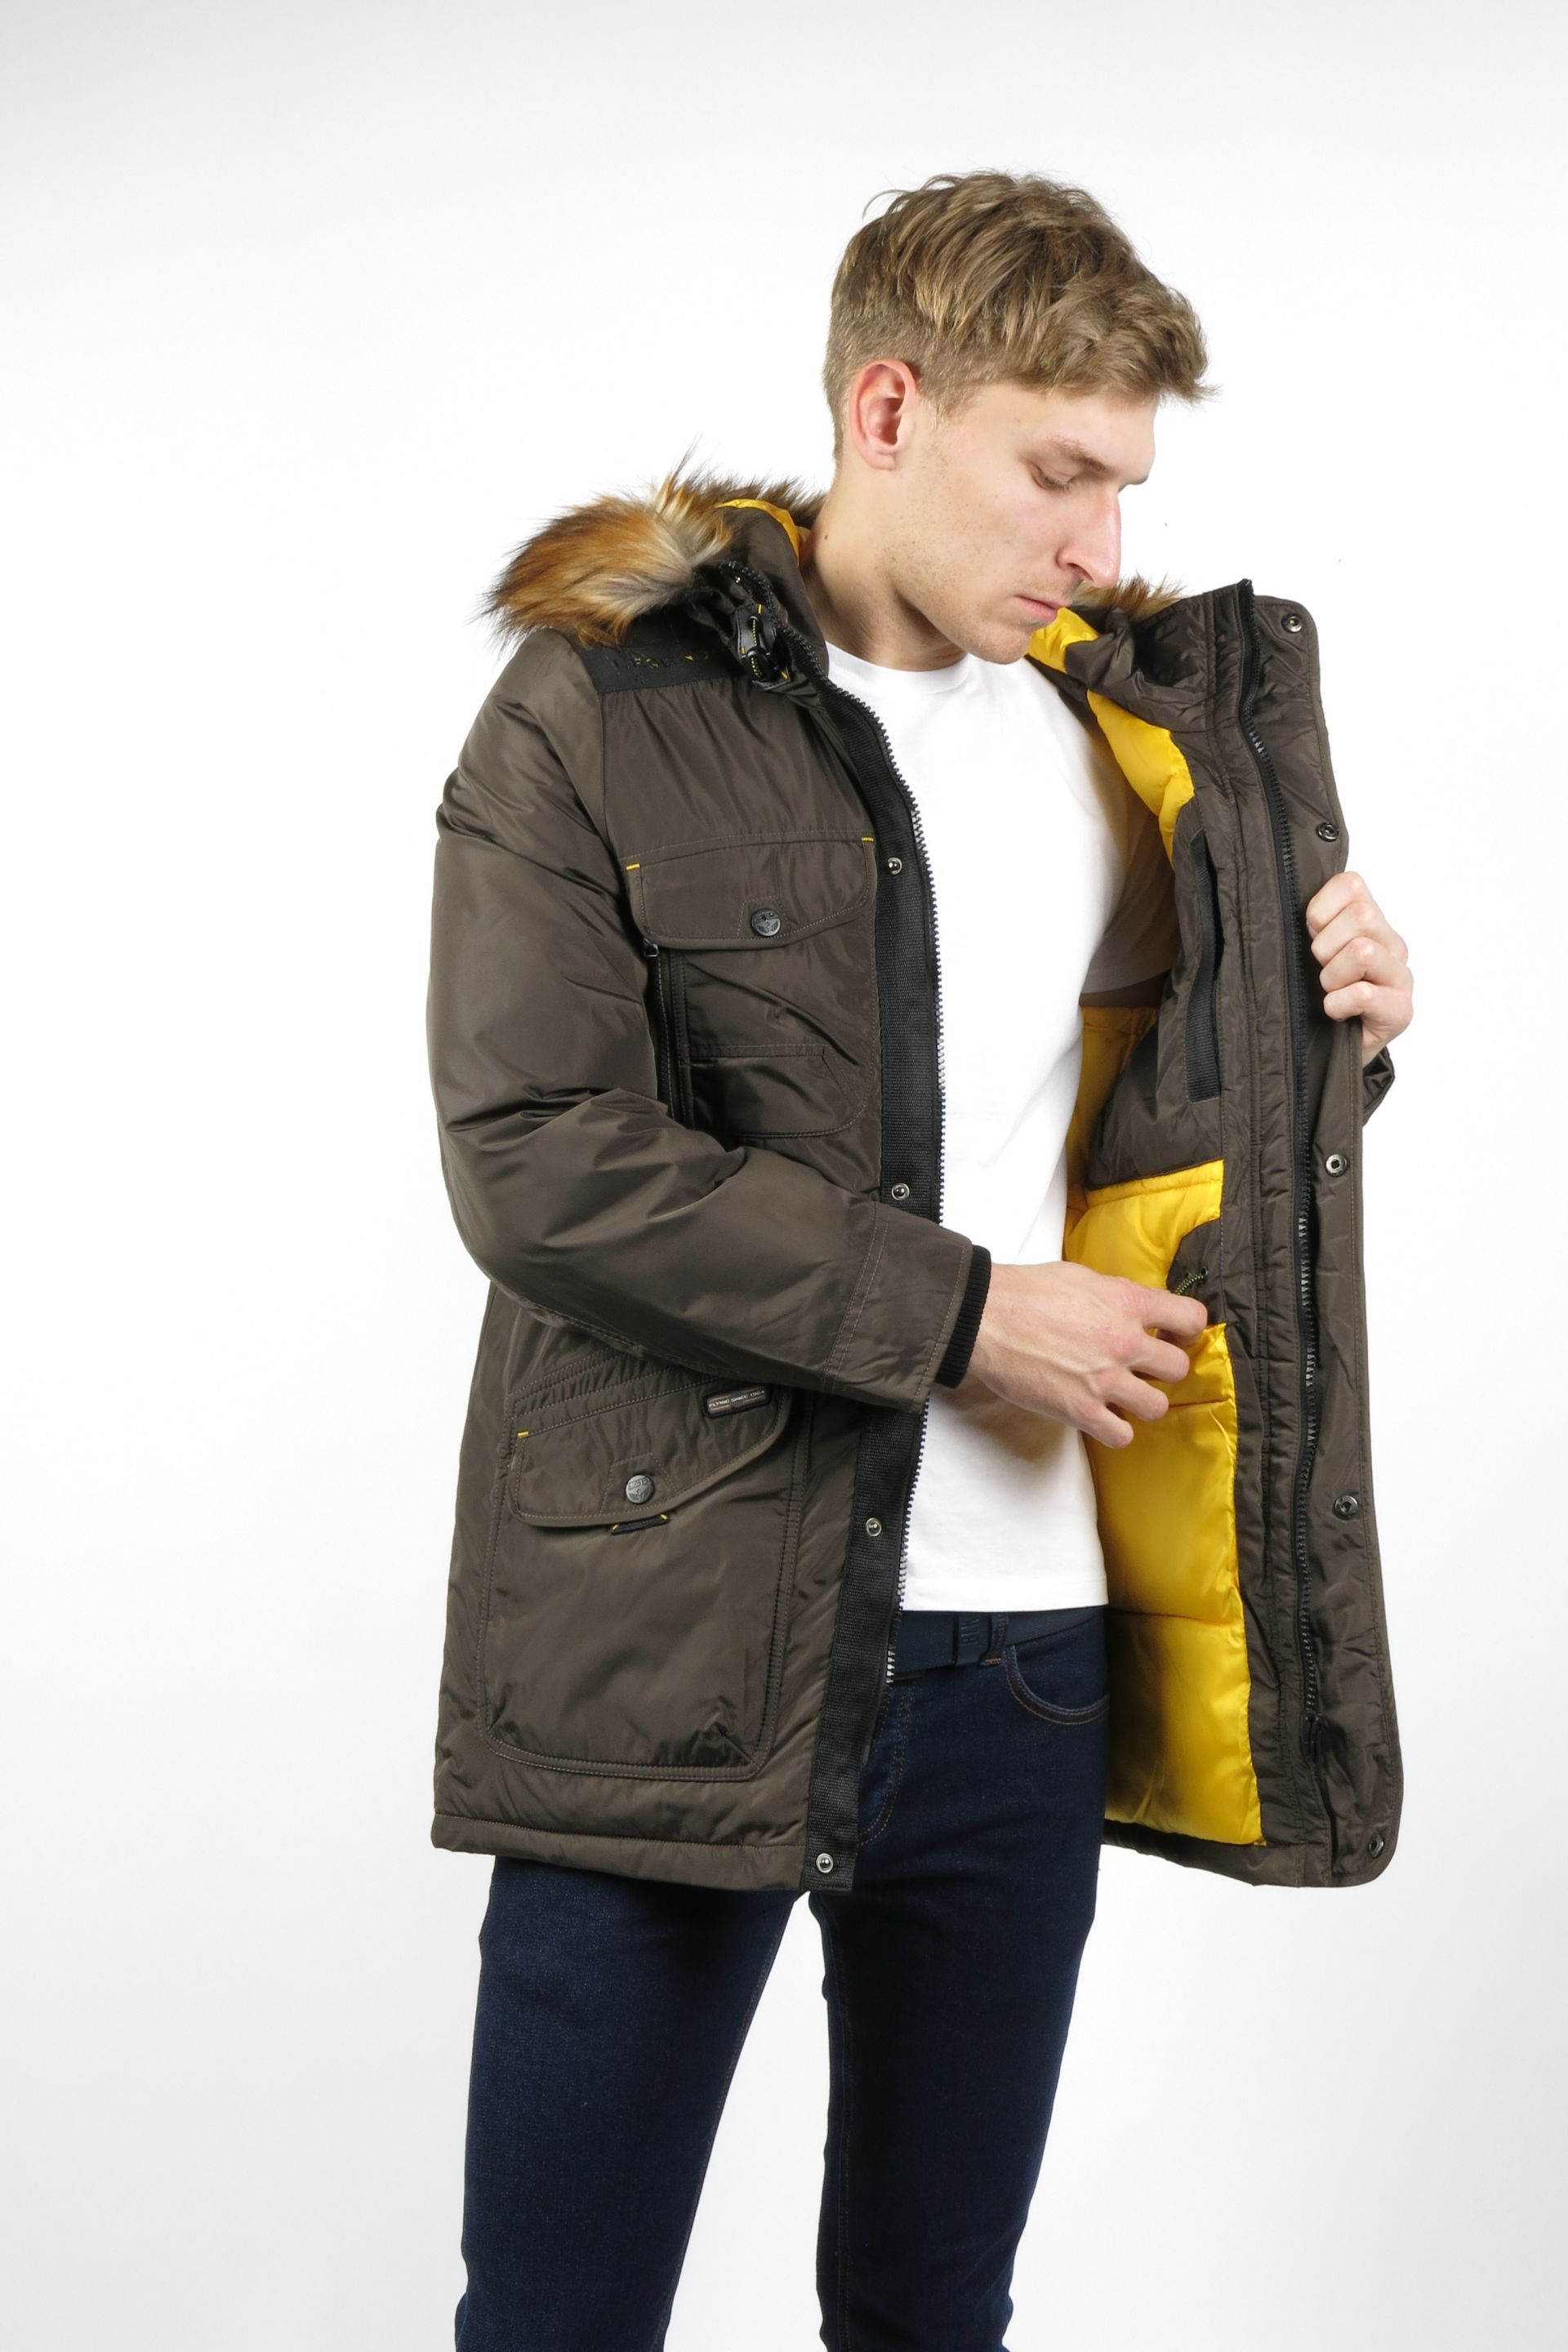 Winter jacket AERONAUTICAL ANACONDA-KHAKI